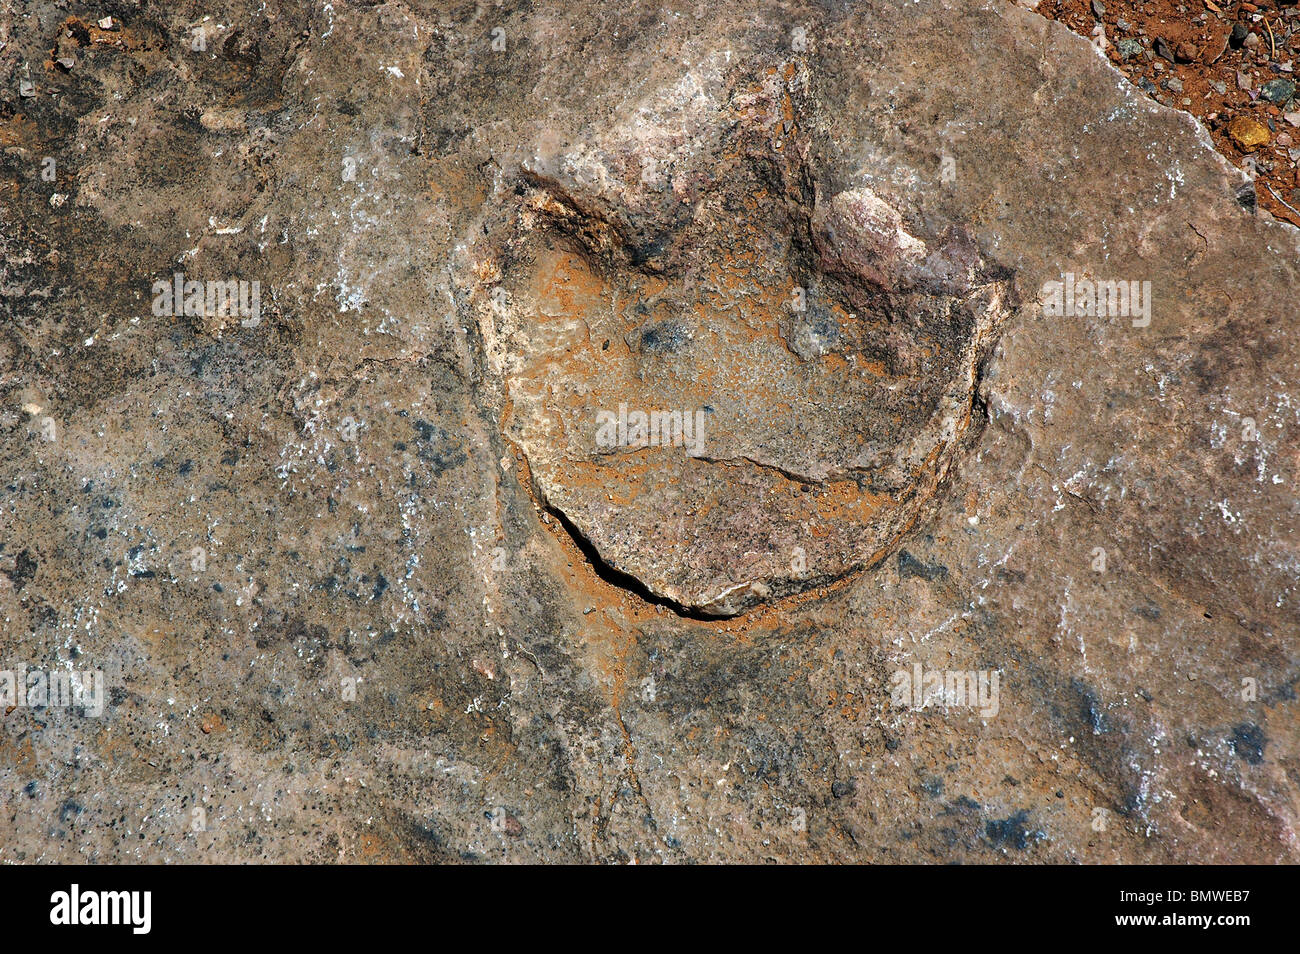 Tres dedos cada período Jurásico pequeña huella de dinosaurio reptil de 180 millones de años en el país Navajo Betatakin ruina Foto de stock